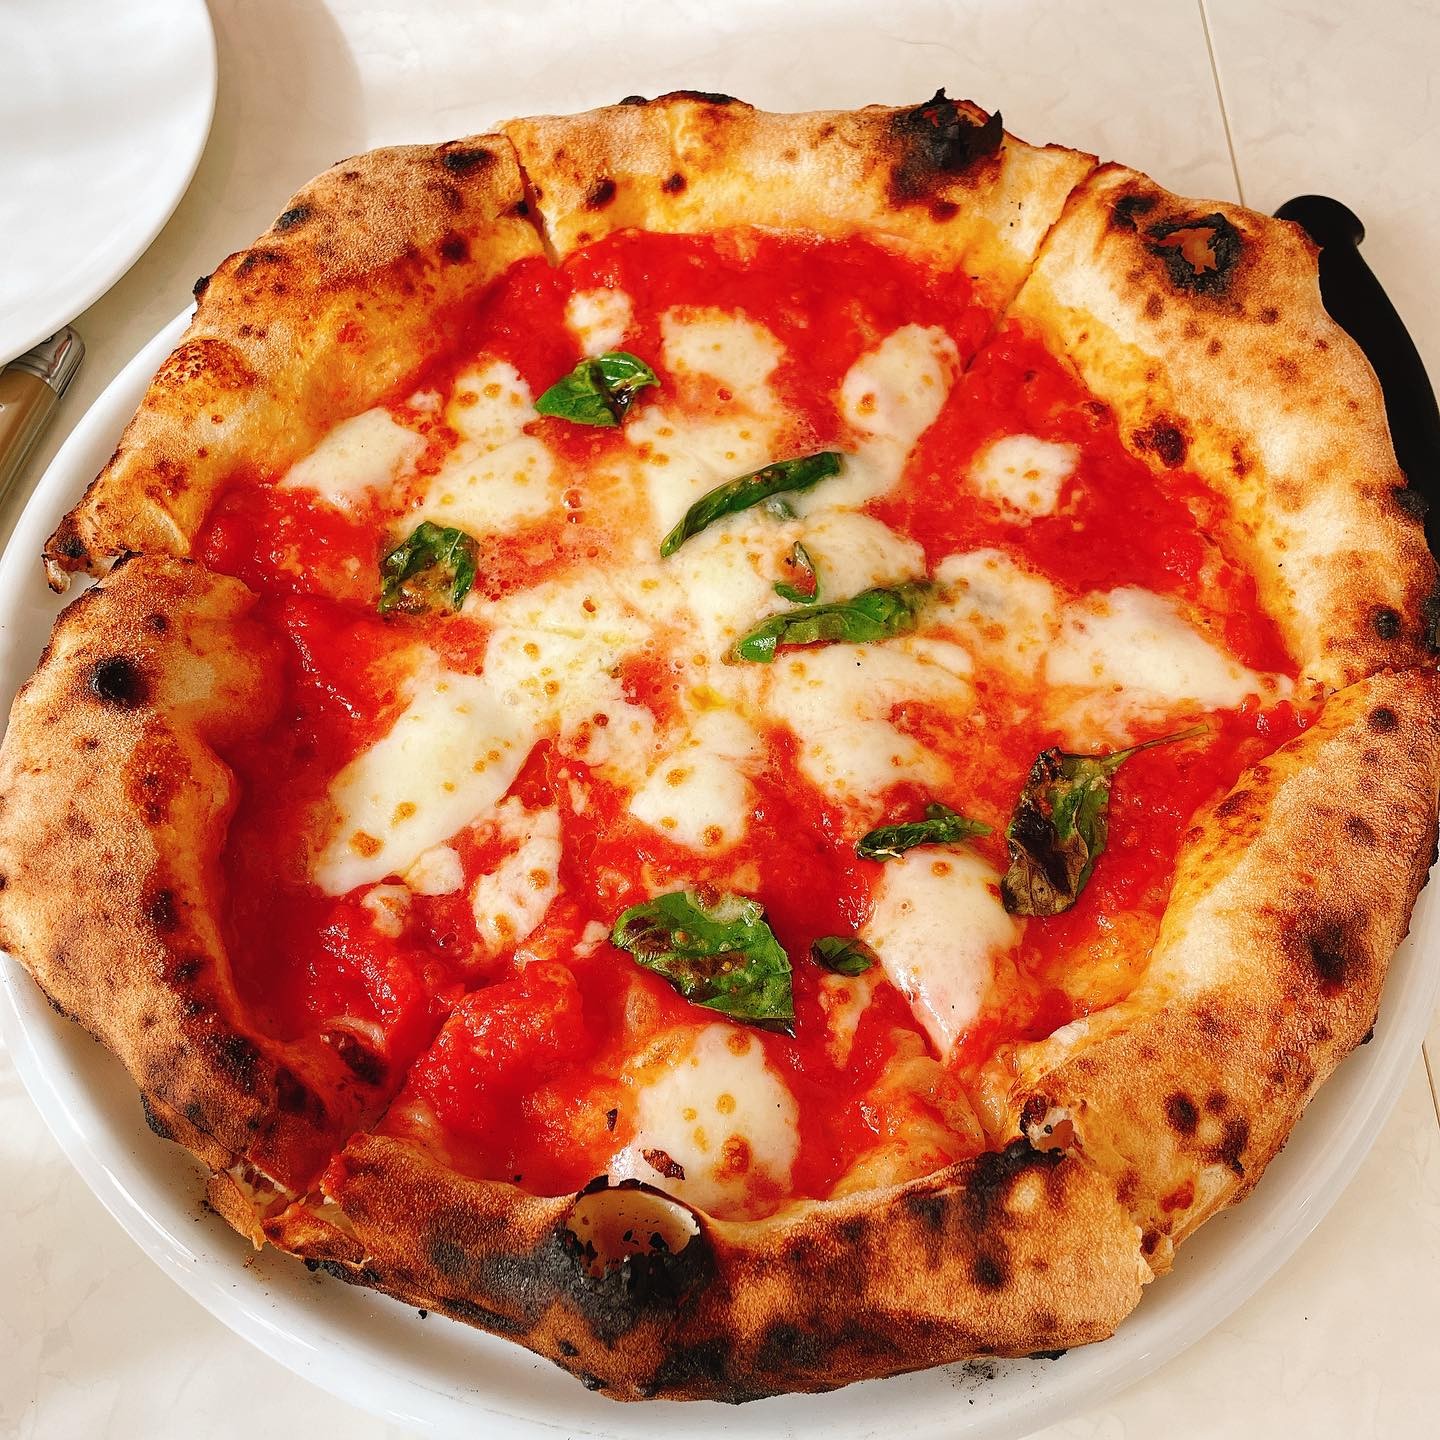 今日はお休みなので足利のラジュゥさん(@pizzerialaggiu )でナポリピッツァのお勉強️

前菜盛り合わせからピッツァ、ドルチェ、食後のエスプレッソまで最高でした
ご馳走様でした🏻
サービスのお二人もありがとうございました

美味しいナポリピッツァを食べたくなったら、是非ラジュゥさんへ
めちゃくちゃレベル高いナポリピッツァです
ご予約必須です

---------------------------------
Pizzeria Laggiù
ピッツェリア ラジュゥ
栃木県足利市朝倉町３丁目８−２７ N3ビル
@pizzerialaggiu 
---------------------------------
TRATTORIA PARAVINO
トラットリア パラヴィーノ
群馬県太田市飯田町1294-1
℡0276-55-5886
lunch  11:30-14:00(l.o.)
dinner 17:30-22:00(l.o.)
日曜定休、月1 月曜休み
---------------------------------



#カウンター席　あります
美味しいグラスワインあります
#肉の盛り合わせ　 #手打ちパスタ　 #イタリア料理　
パラヴィーノワインアカウント
@paravino.vino
パラヴィーノテイクアウトアカウント
@paravino.takeout